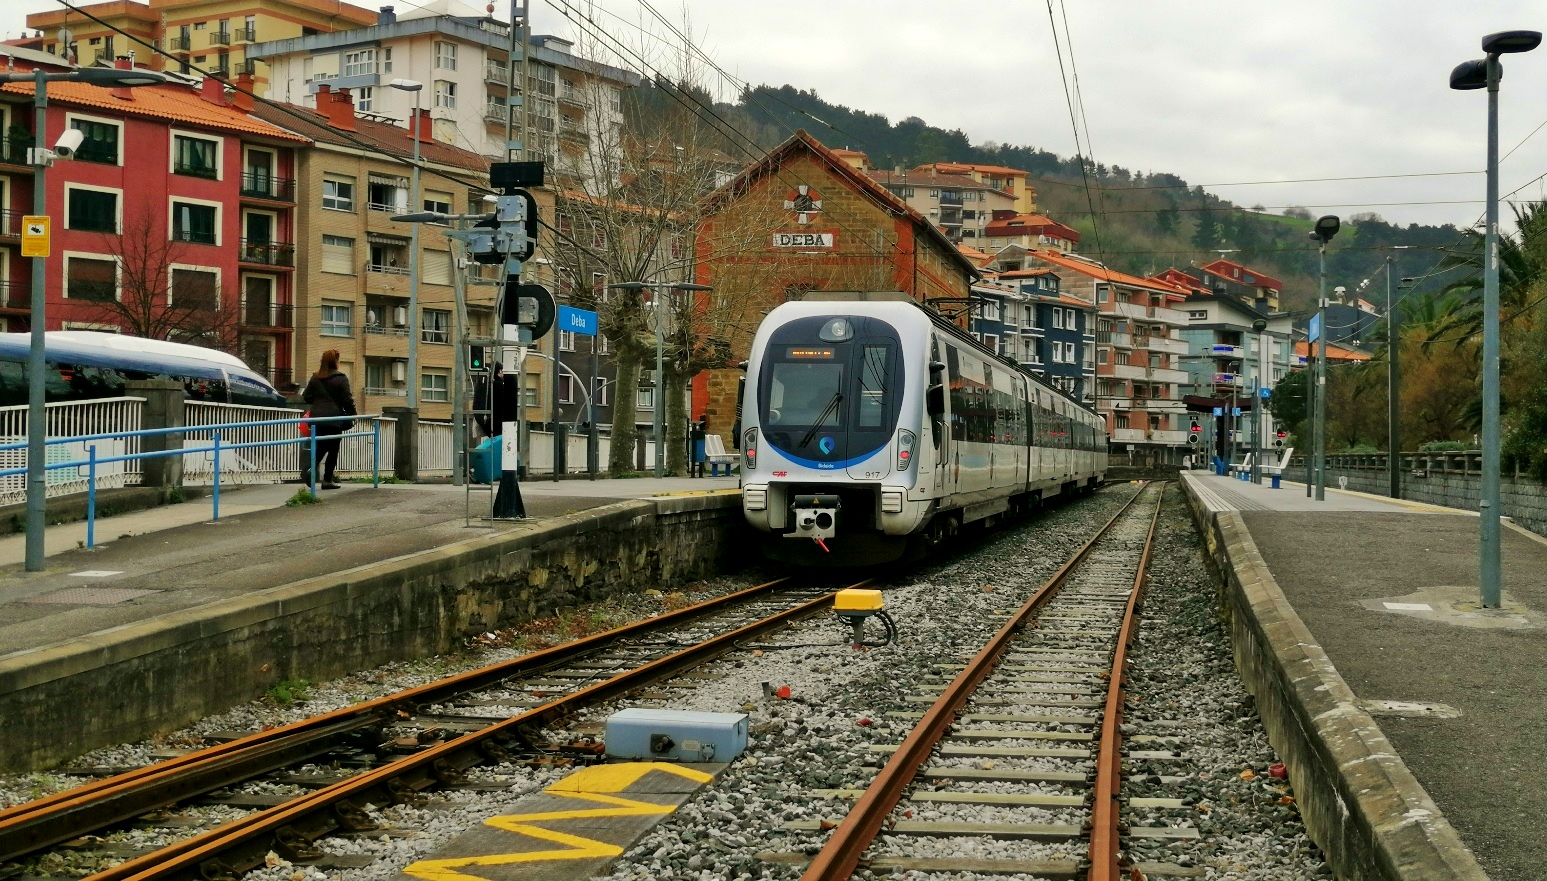 EuskoTren által üzemeltetett CAF motorvonat Deba állomáson. A sínek azért rozsdásak, mert egy szakaszon vágányzár volt